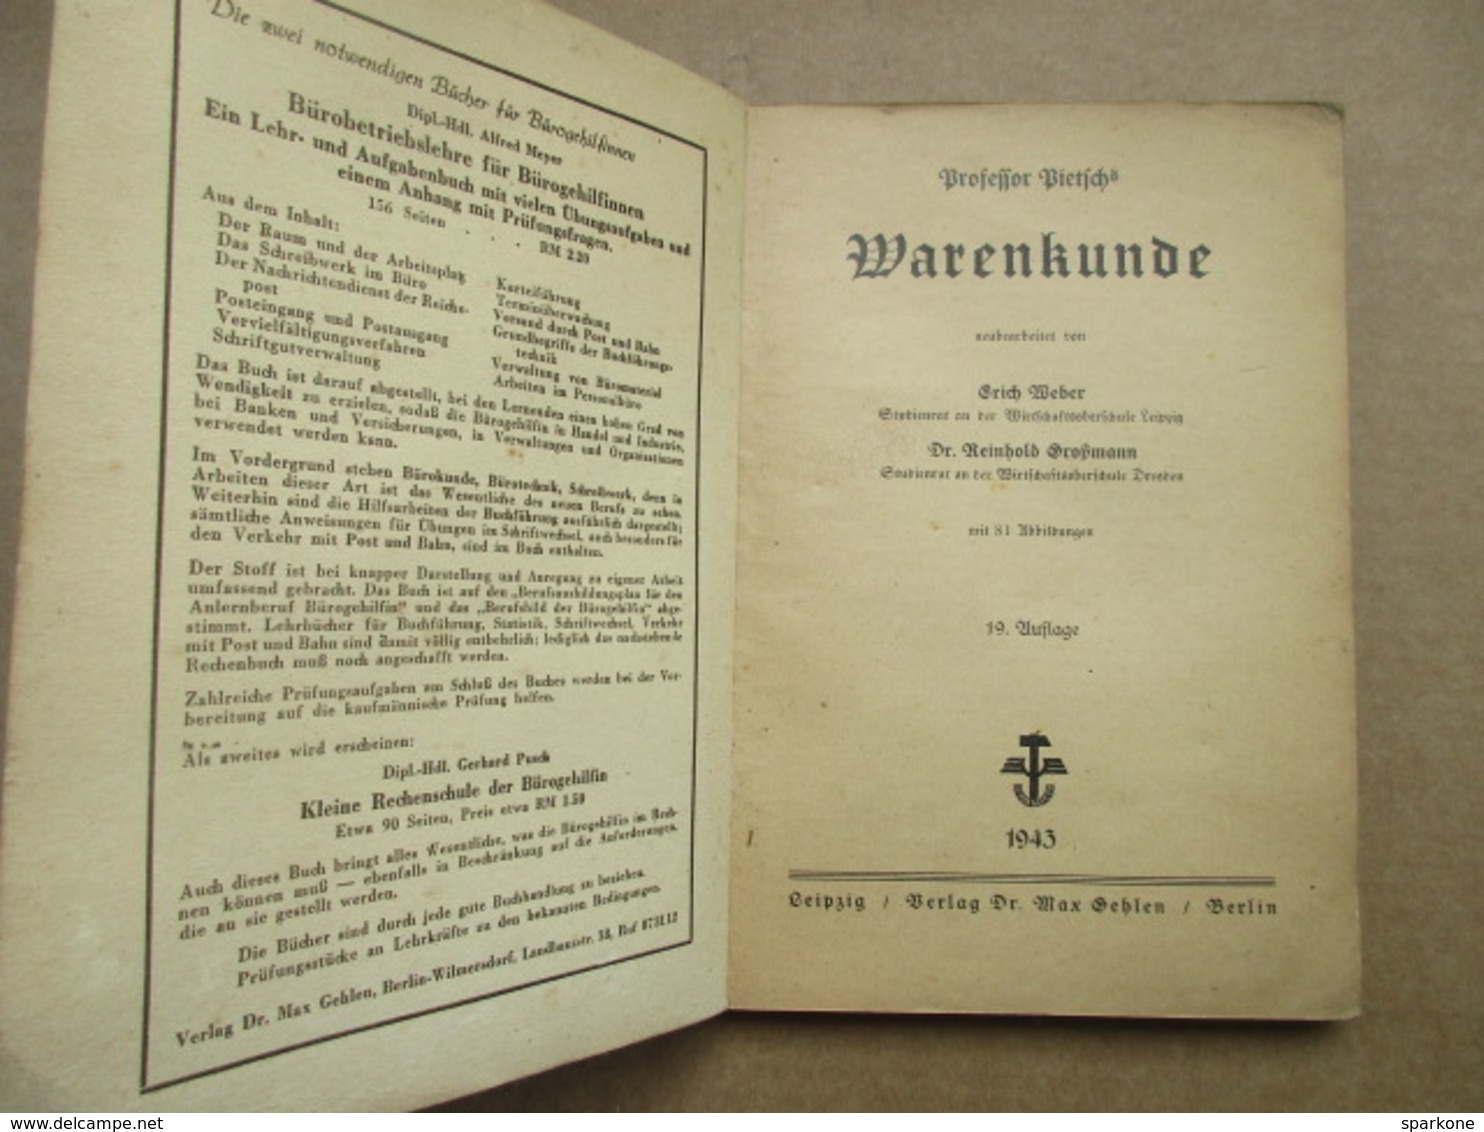 Warenkunde (Professor Pietschs) éditions De 1943 - Livres Anciens